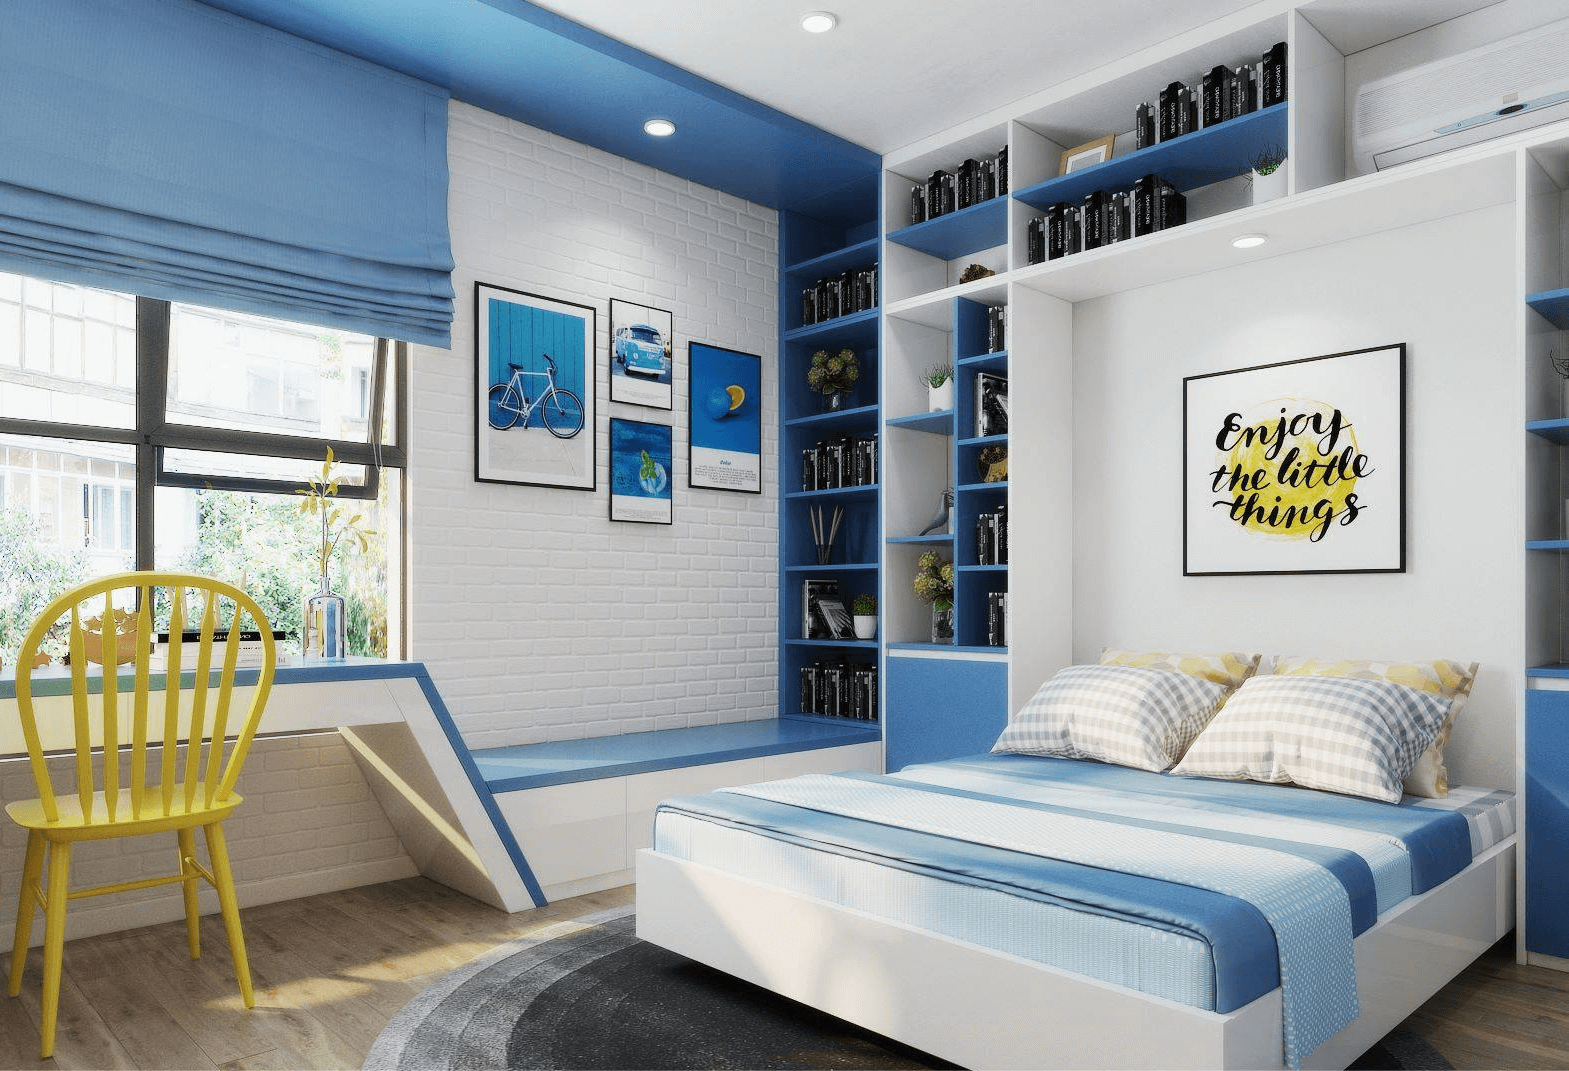 phòng ngủ màu xanh pastel